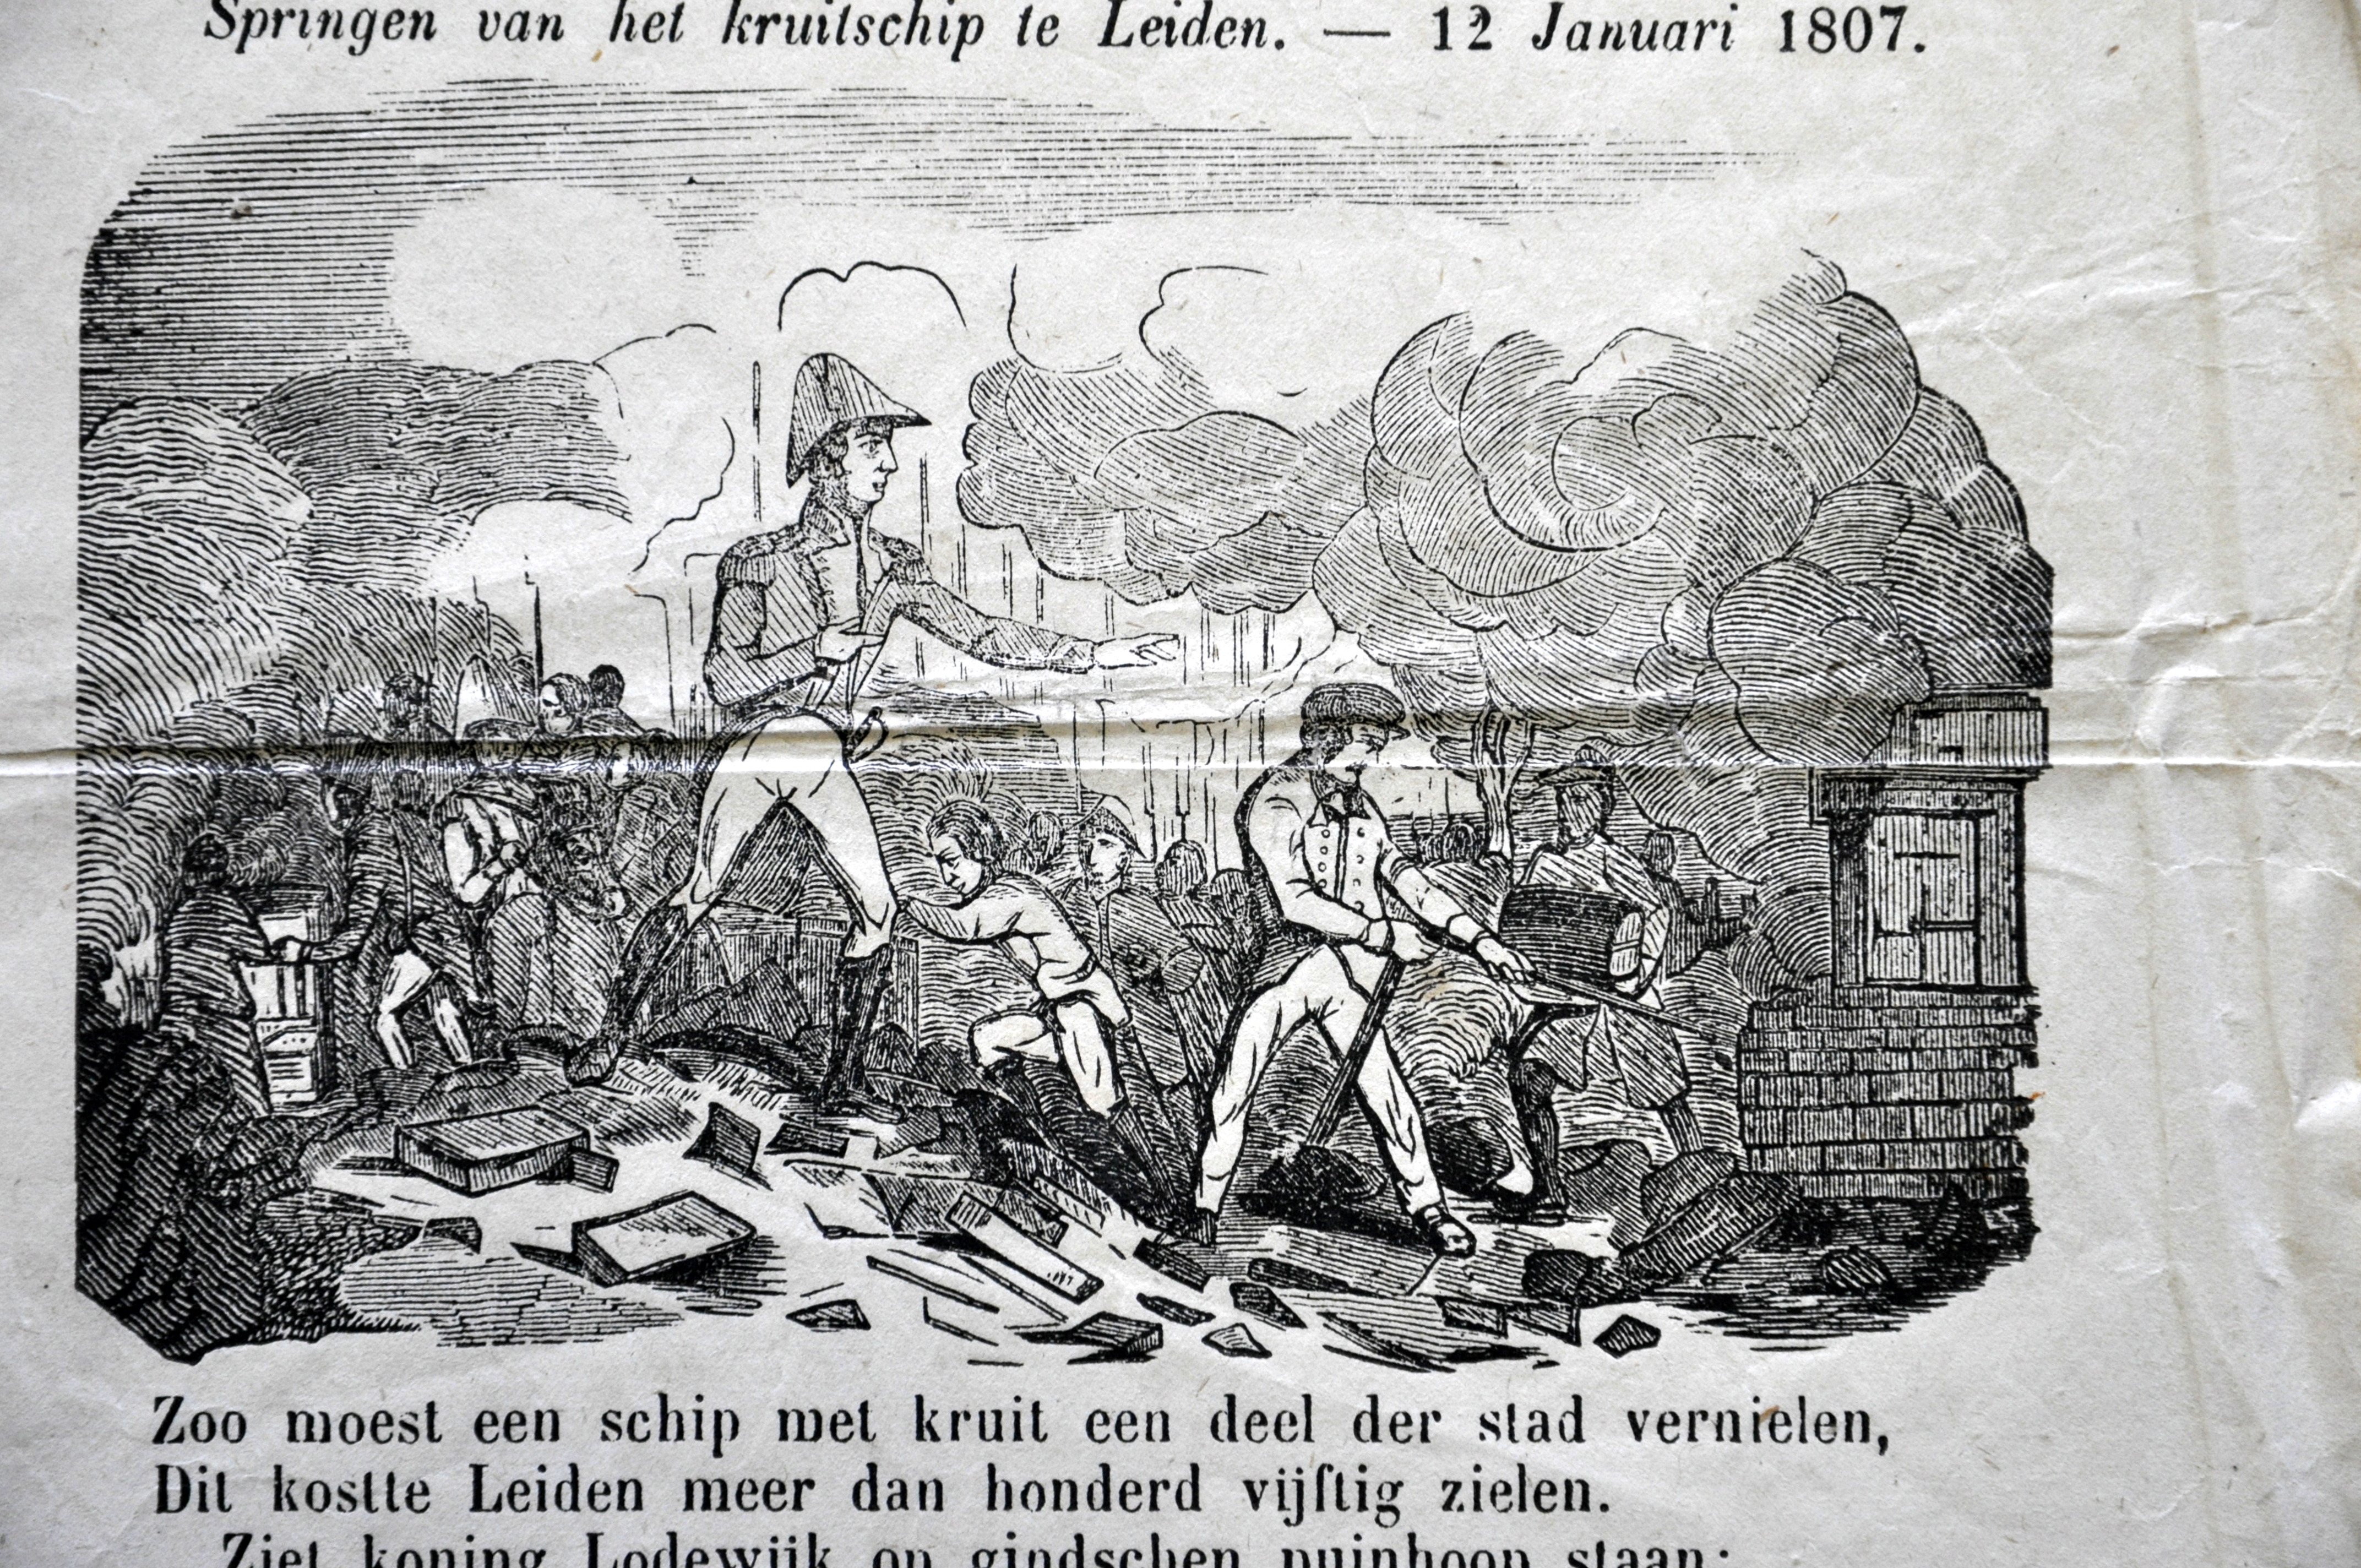 Nieuwsprent over het ontploffen van het kruitschip te Leiden, 1807.